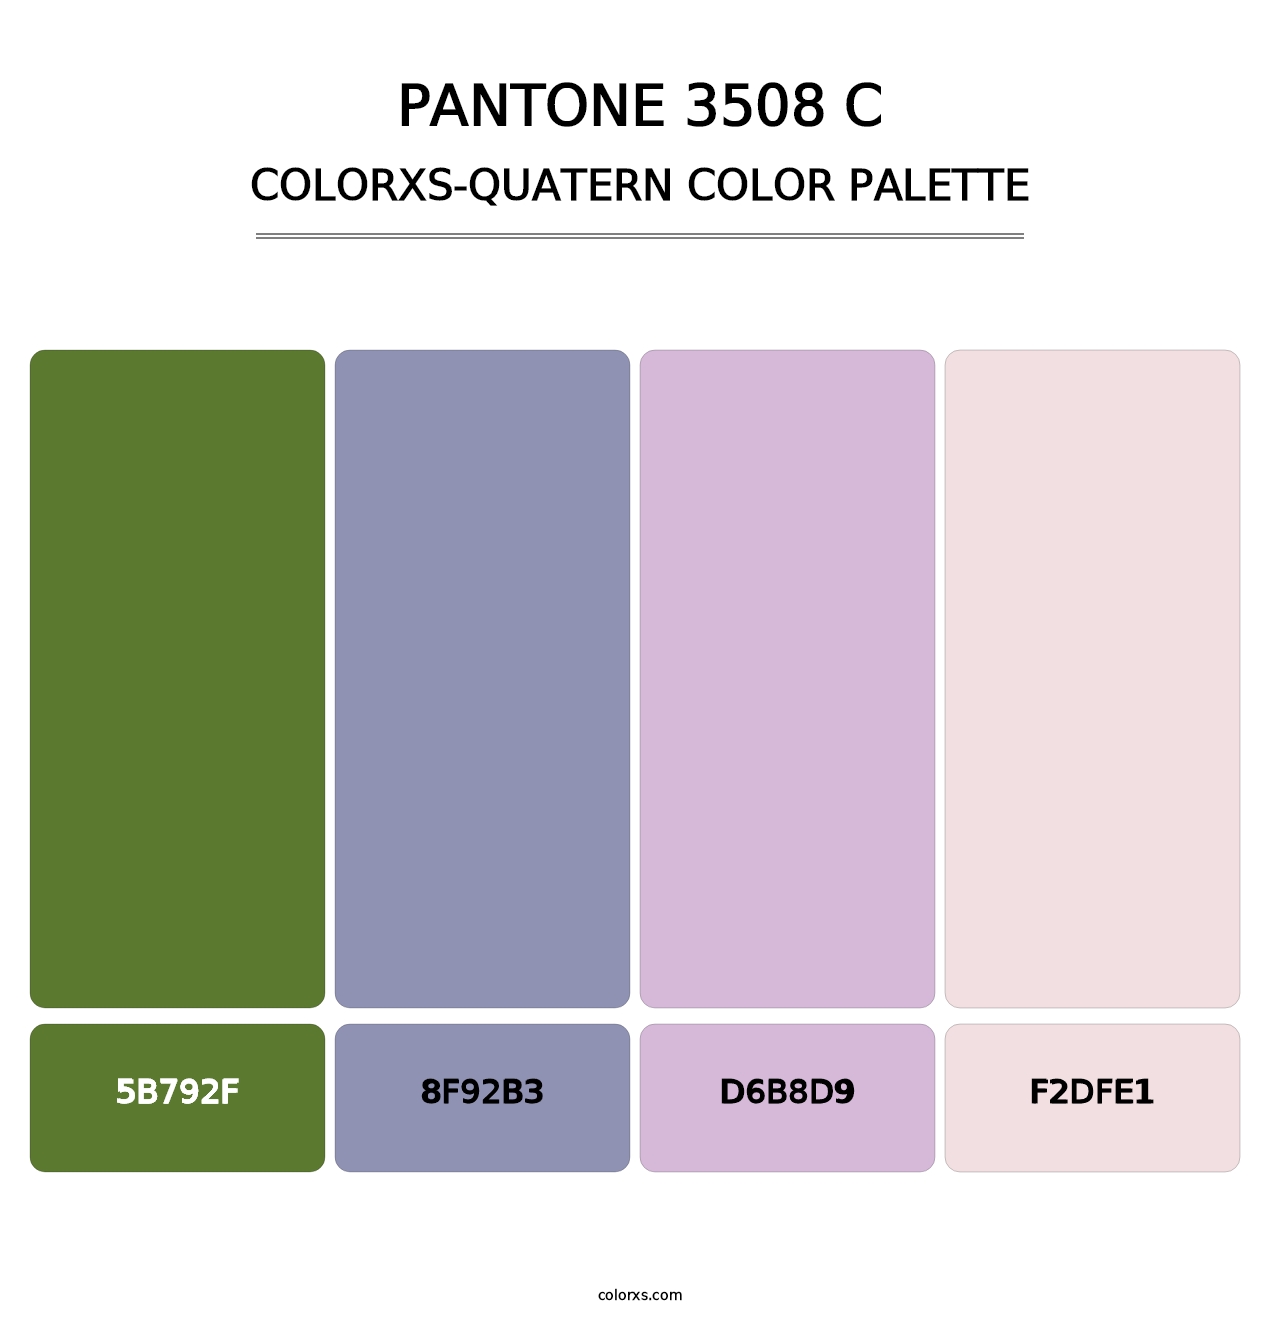 PANTONE 3508 C - Colorxs Quatern Palette